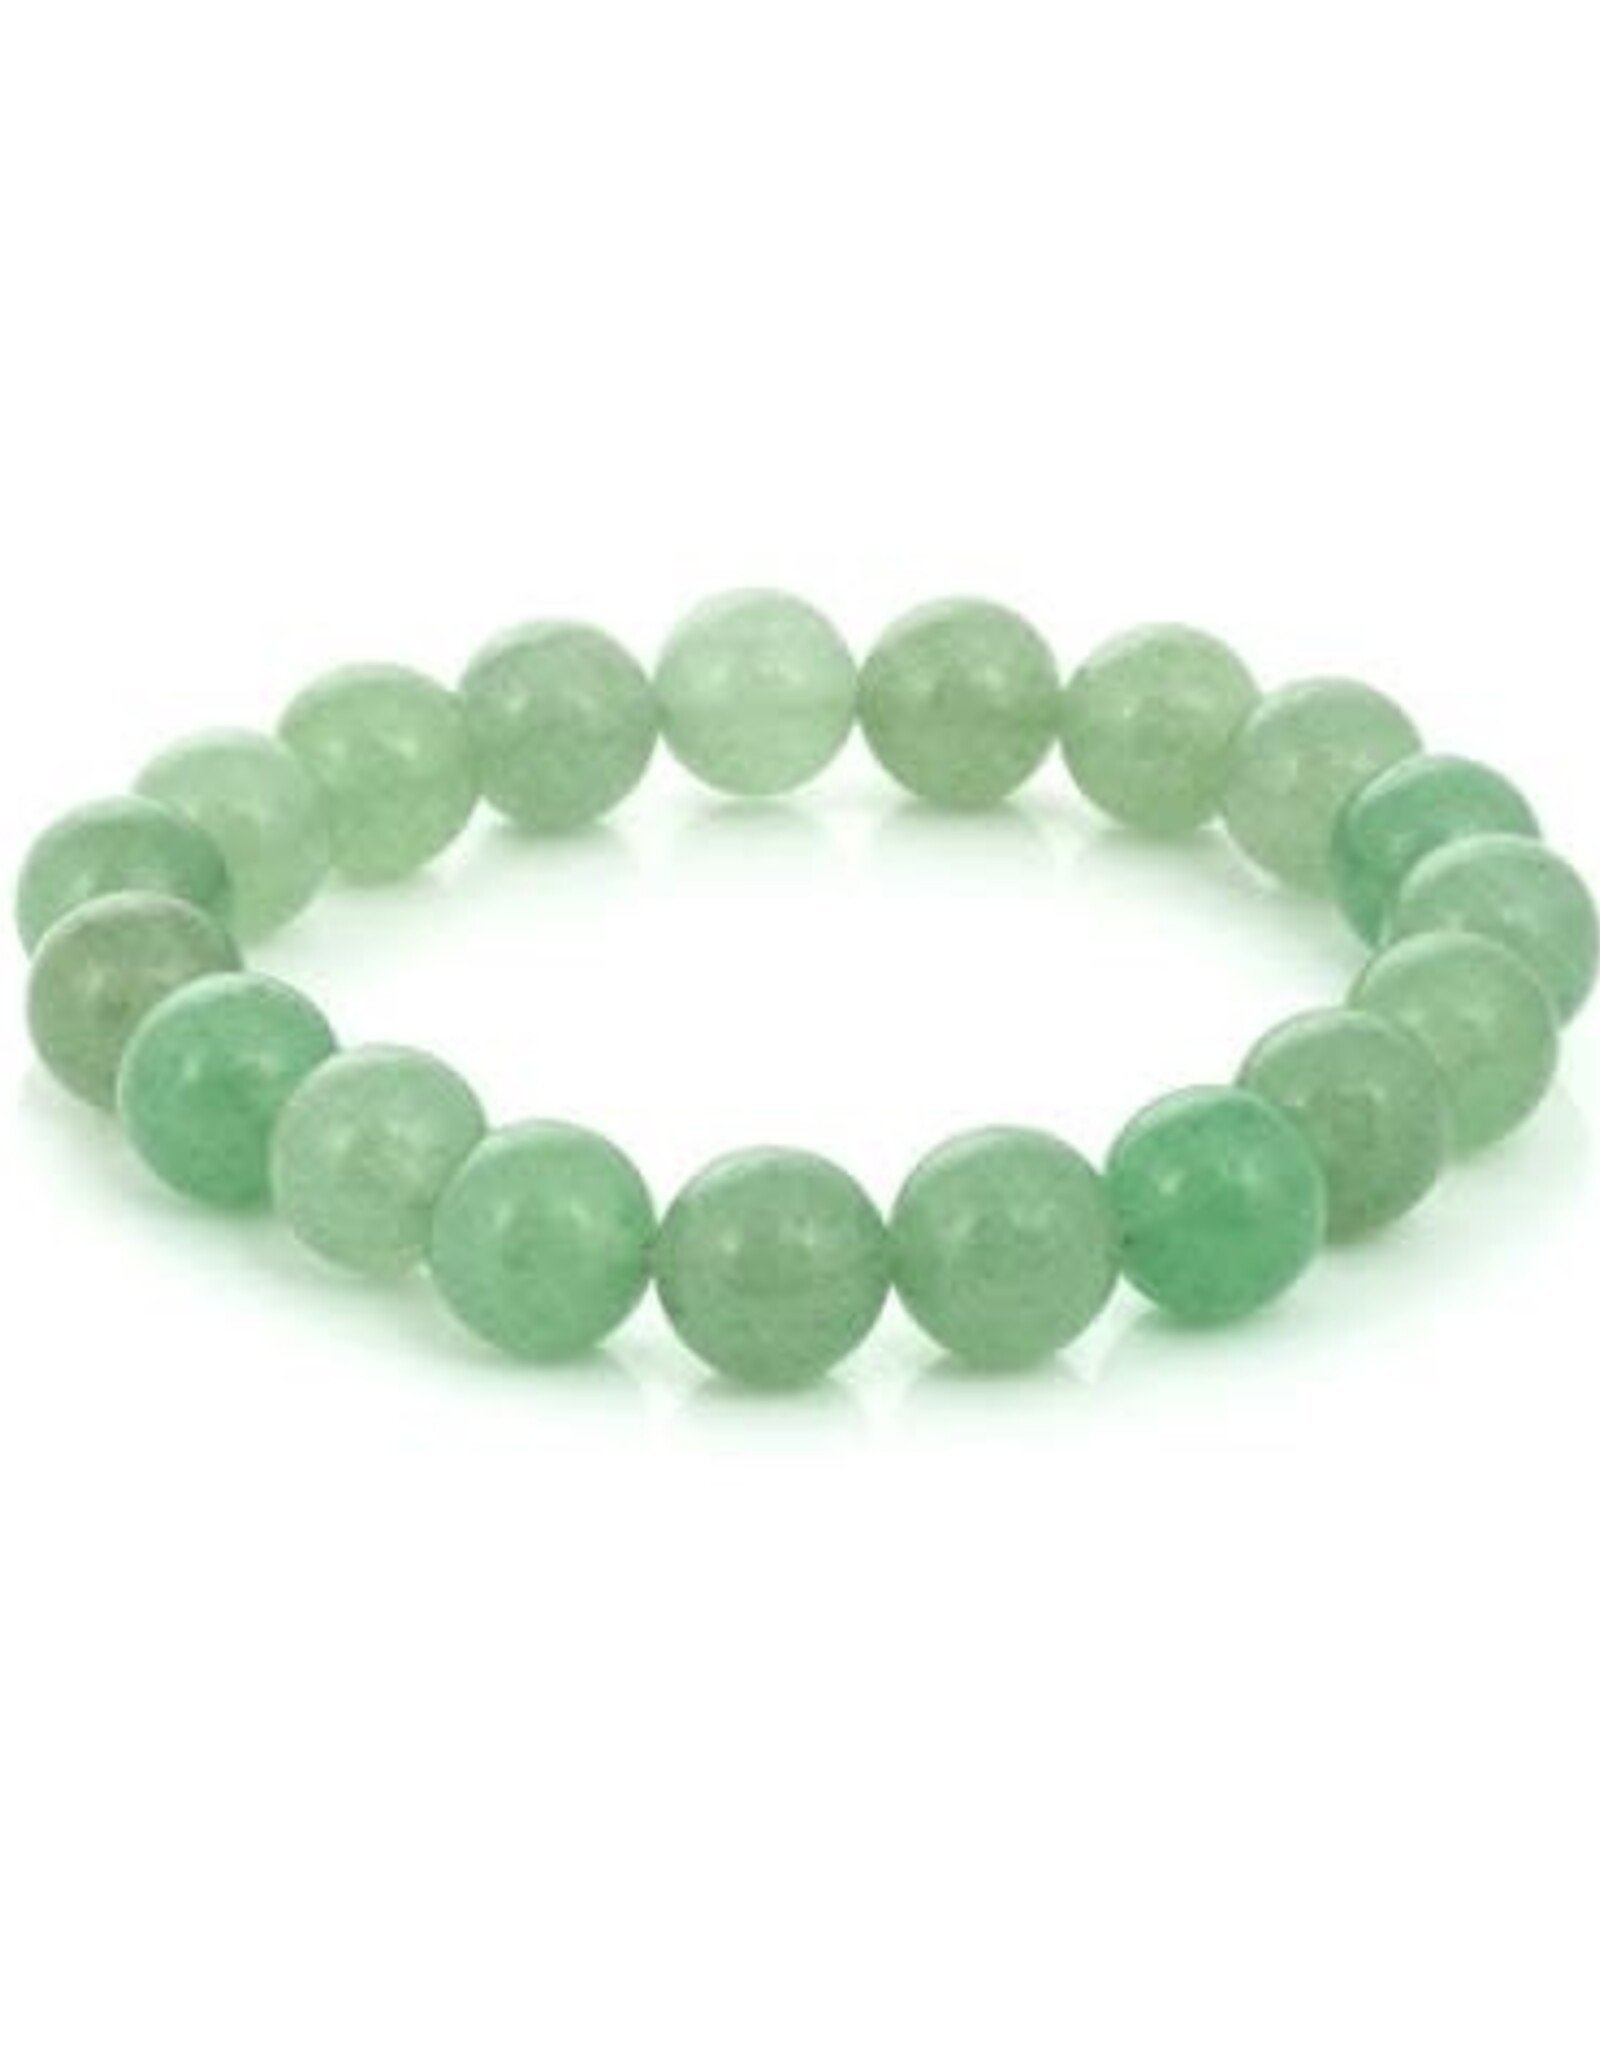 Green Aventurine Men's Bracelet 8MM - 8-8.5"